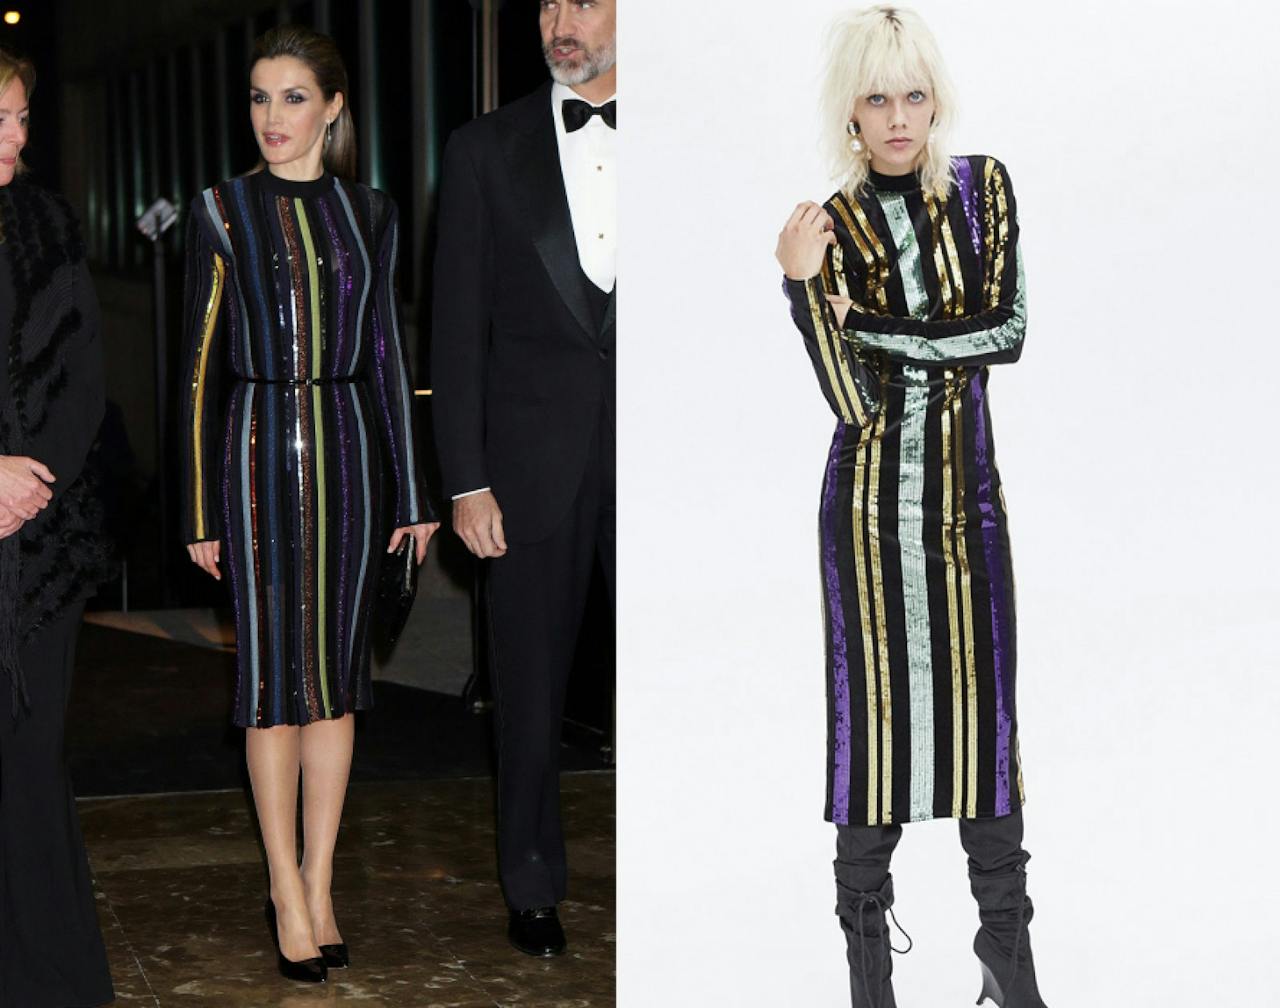 El vestido de Nina Ricci y el diseño de Zara